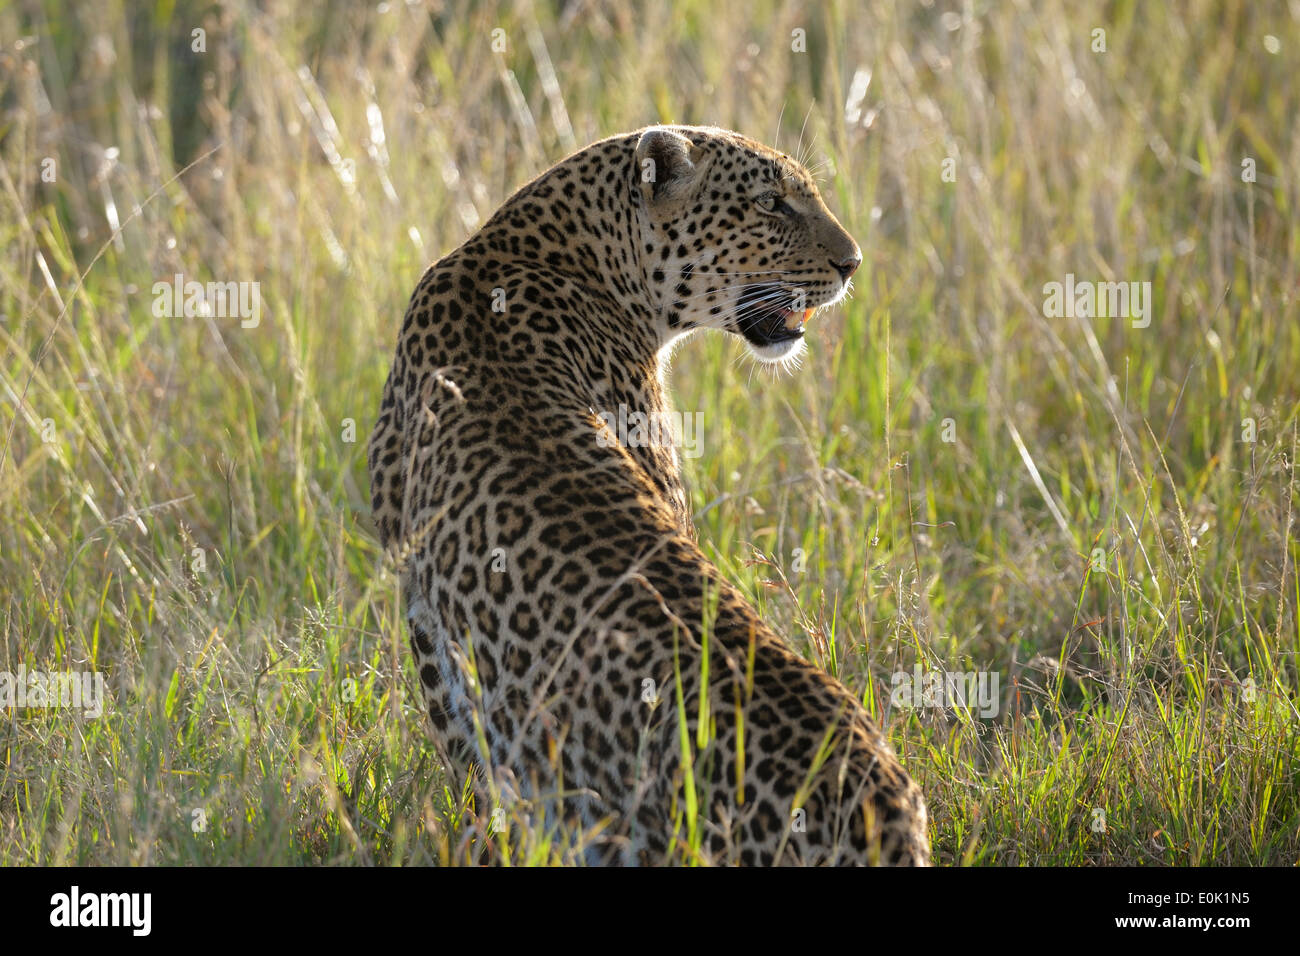 Leopard in the high grass, Masai Mara, Kenya Stock Photo